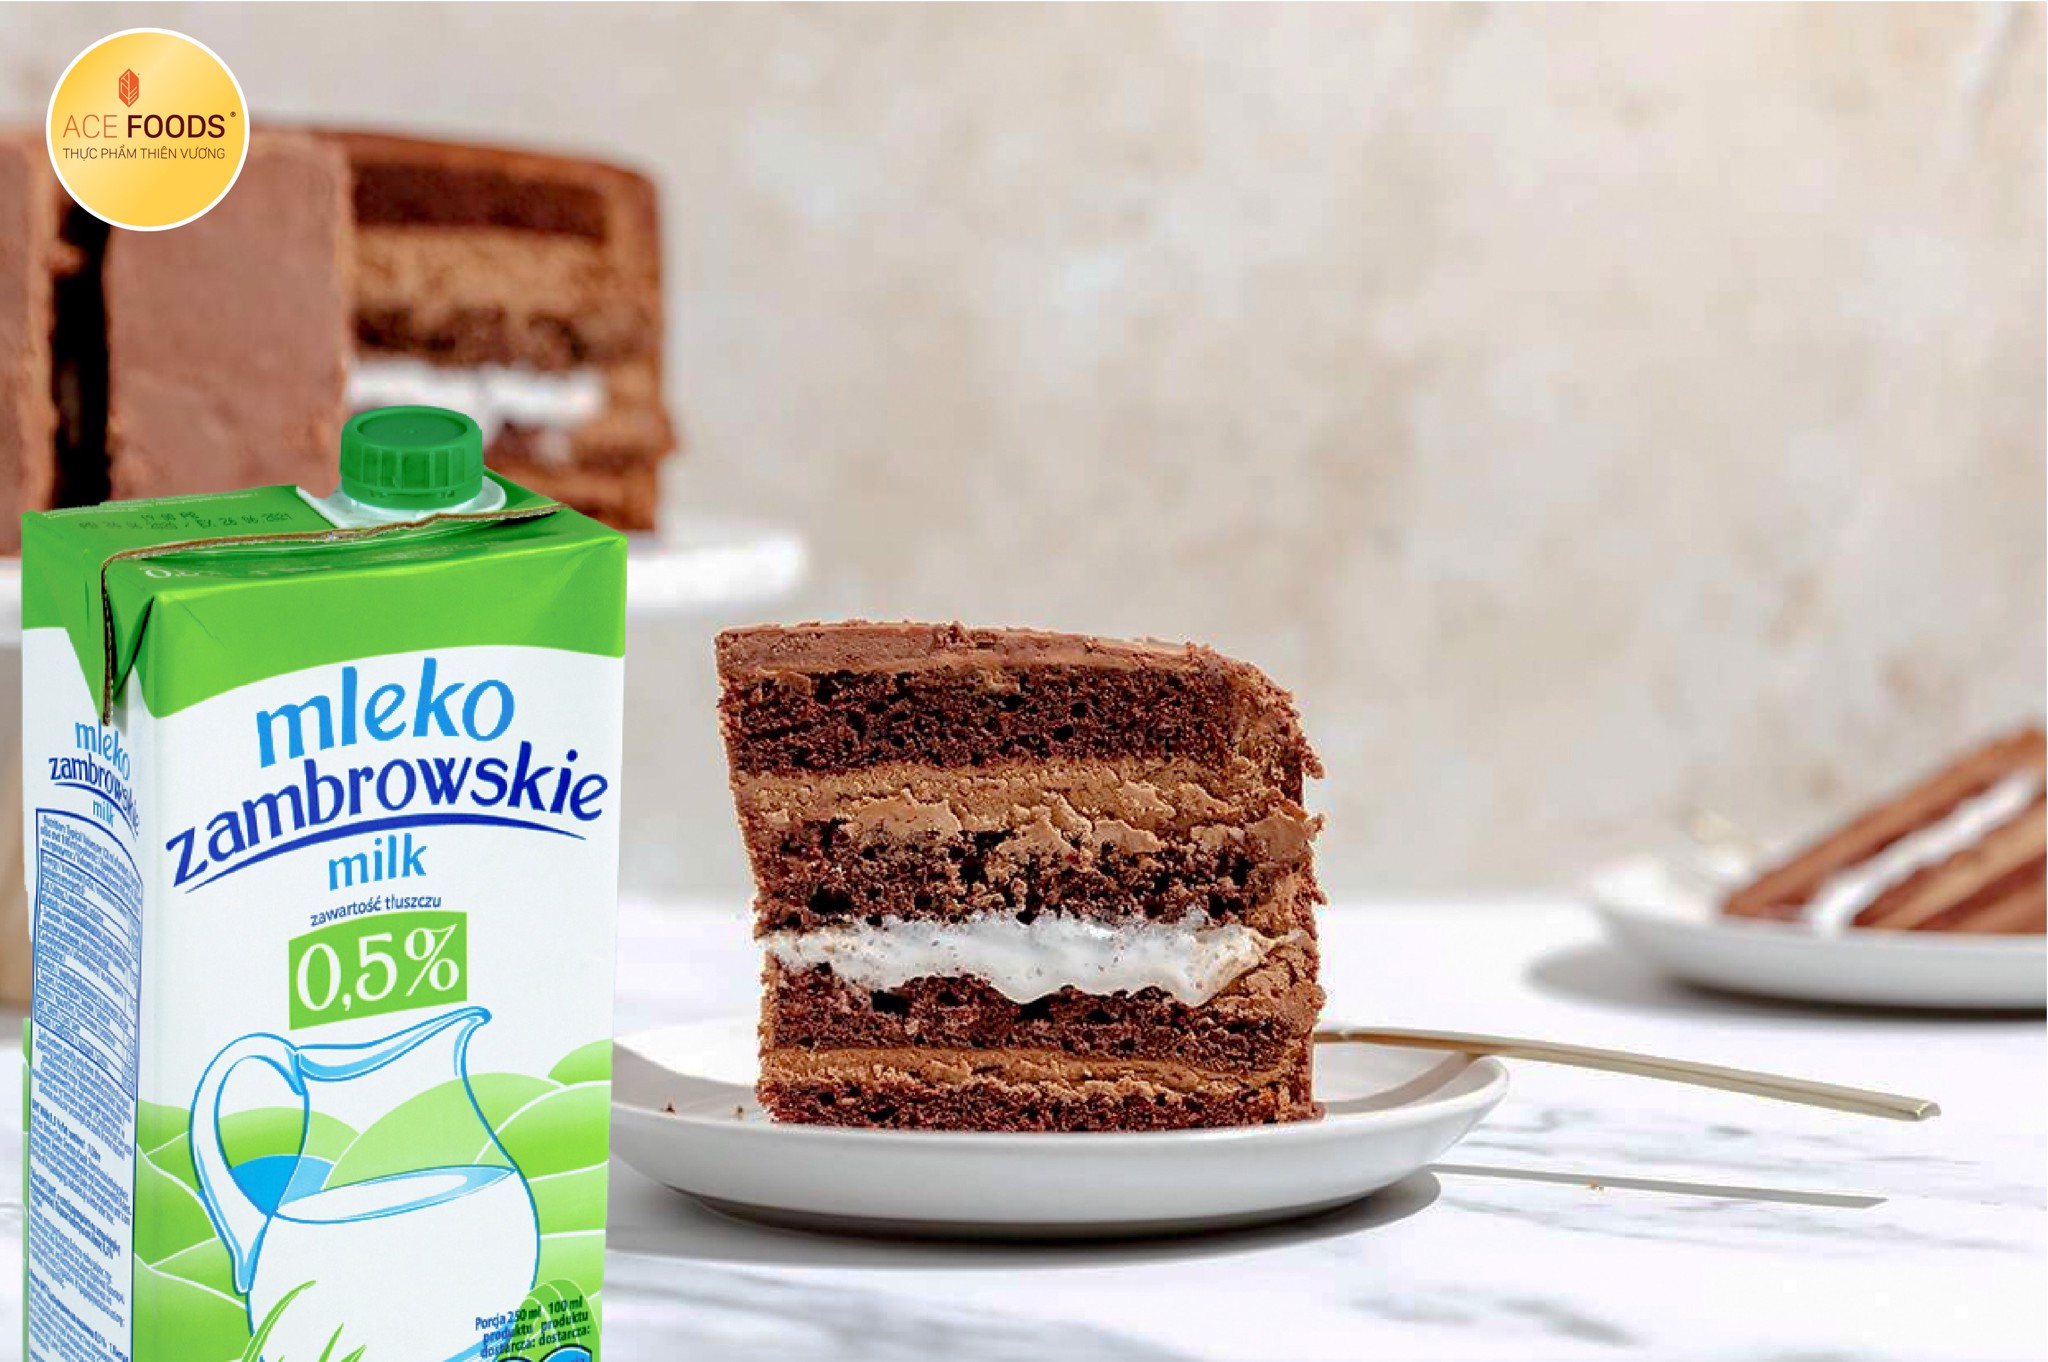 Làm bánh từ sữa tươi Mleko sẽ giúp cốt bánh thơm và mềm xốp hơn